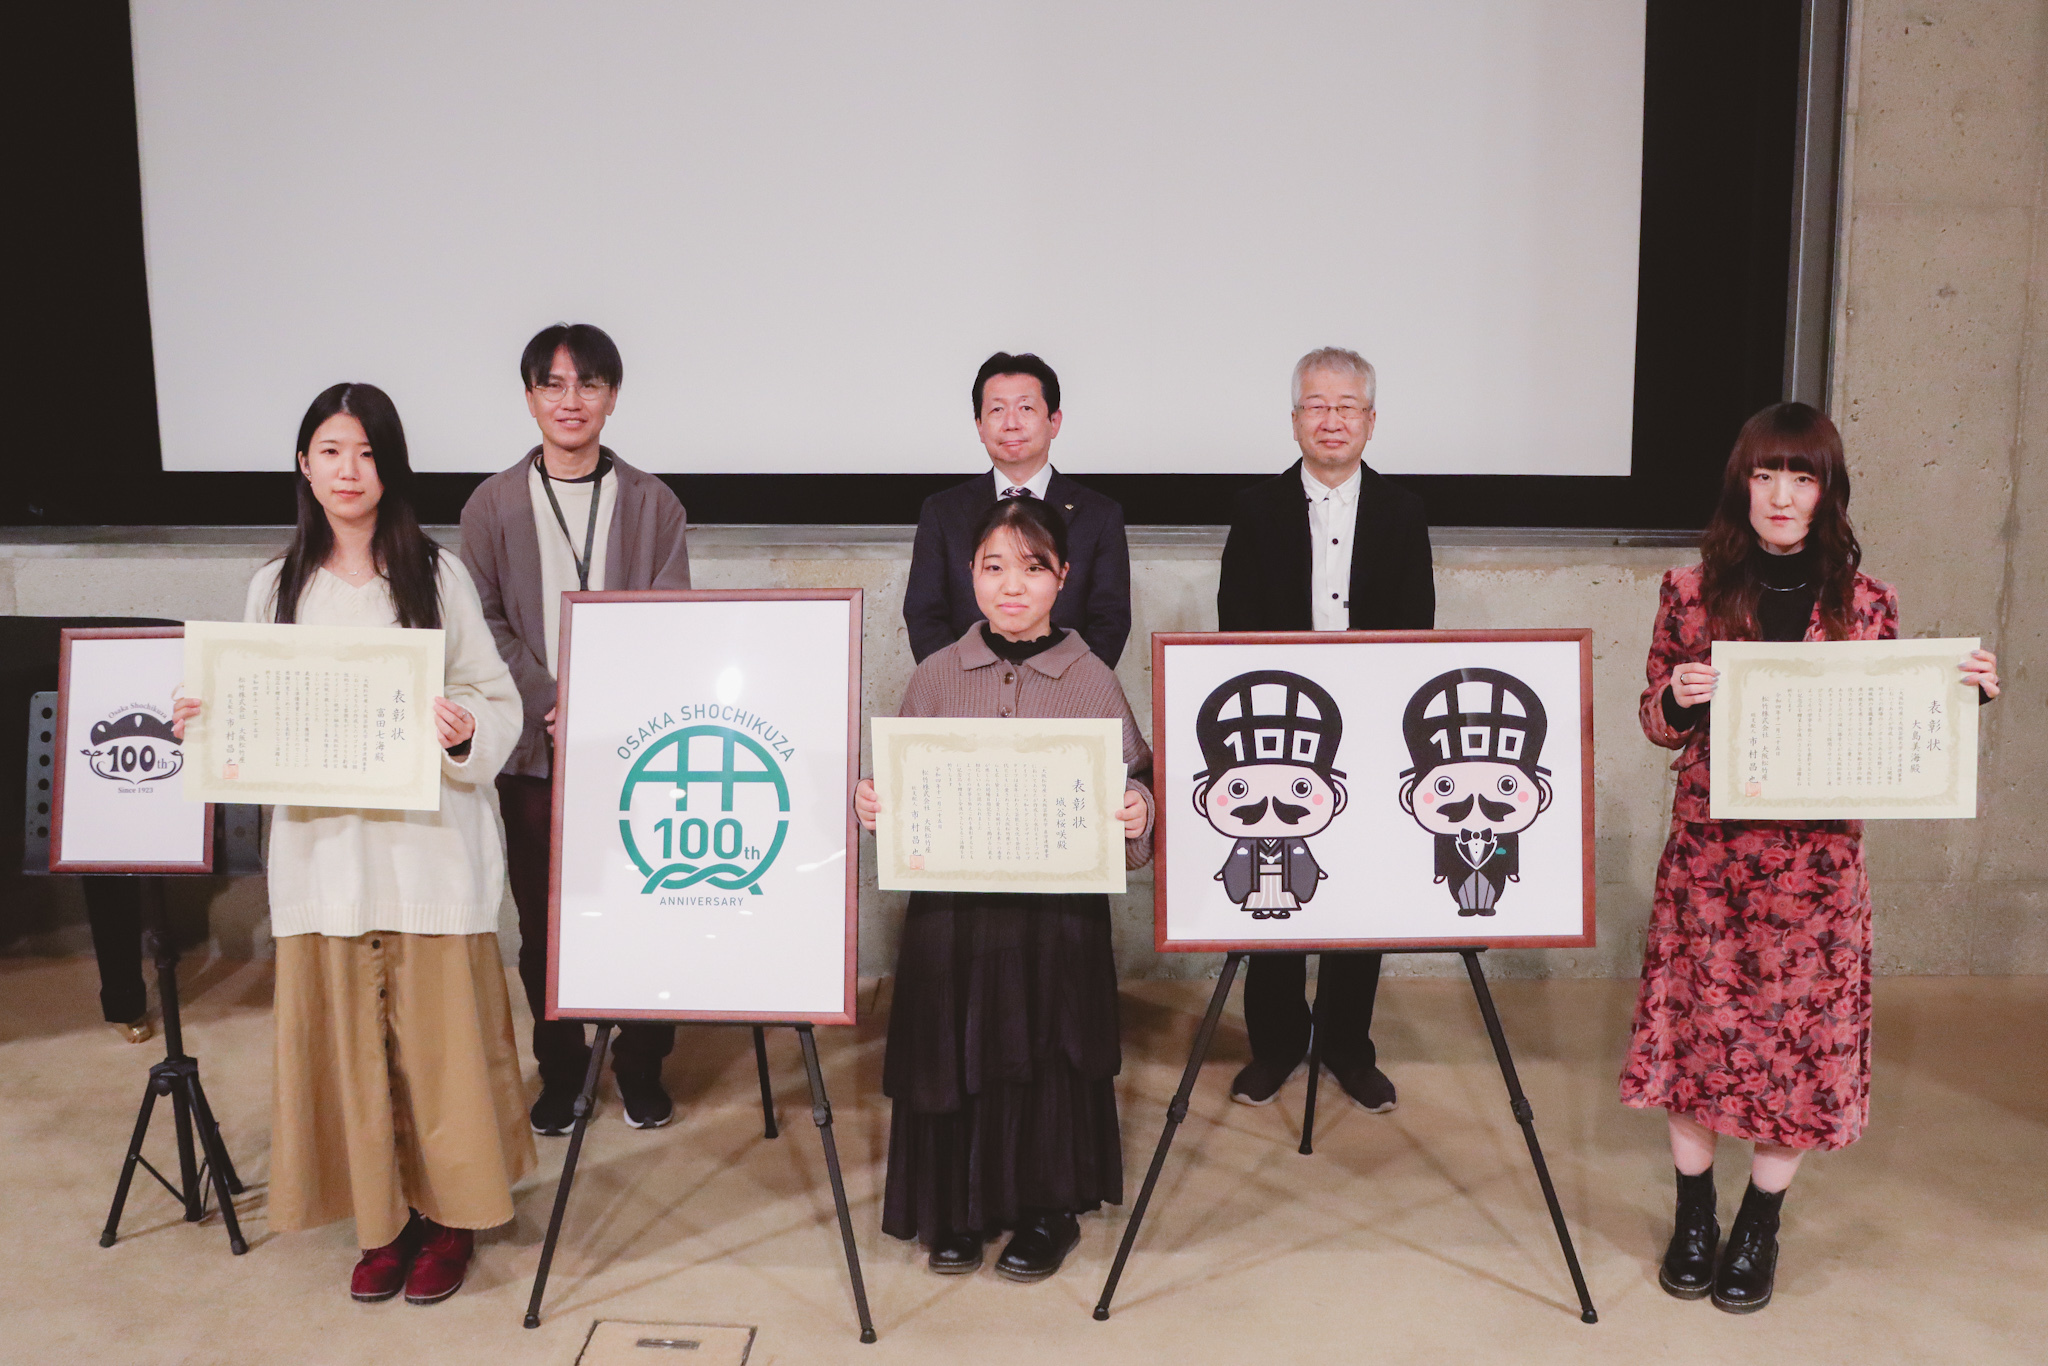 大阪芸術大学で開催された授賞式の様子